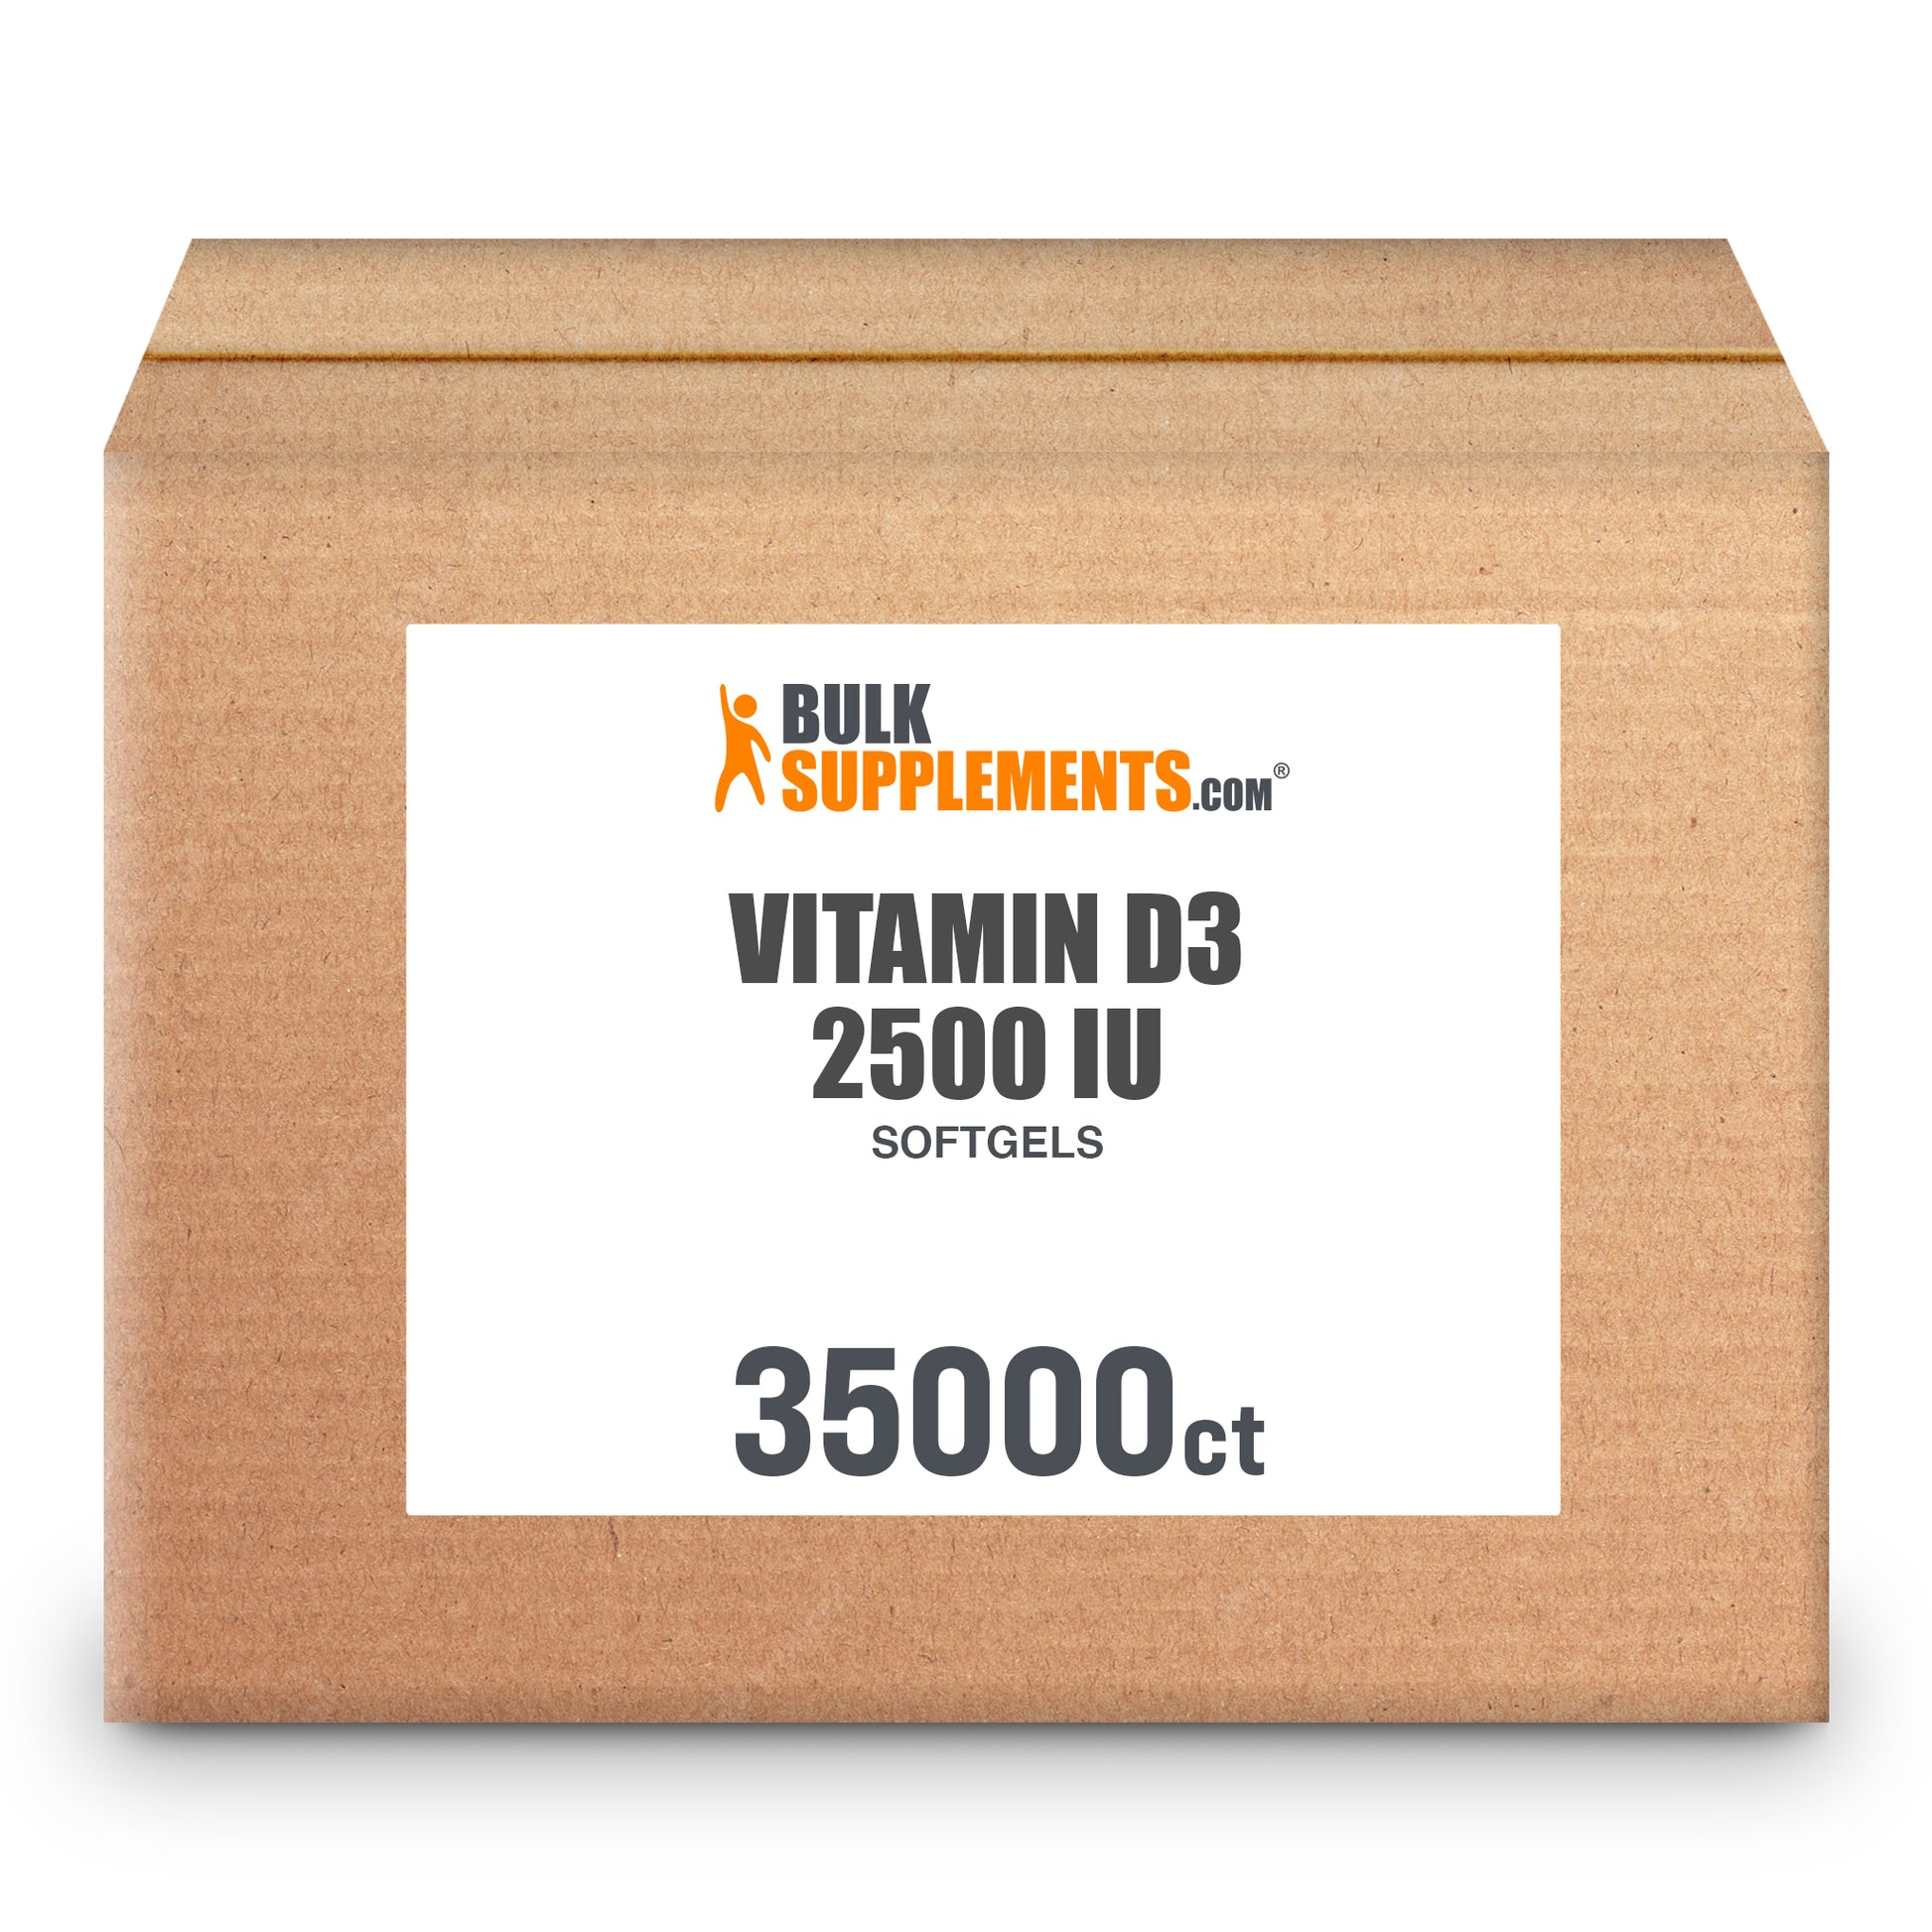 Vitamin D3 Softgels 2500 IU 35,000 ct box